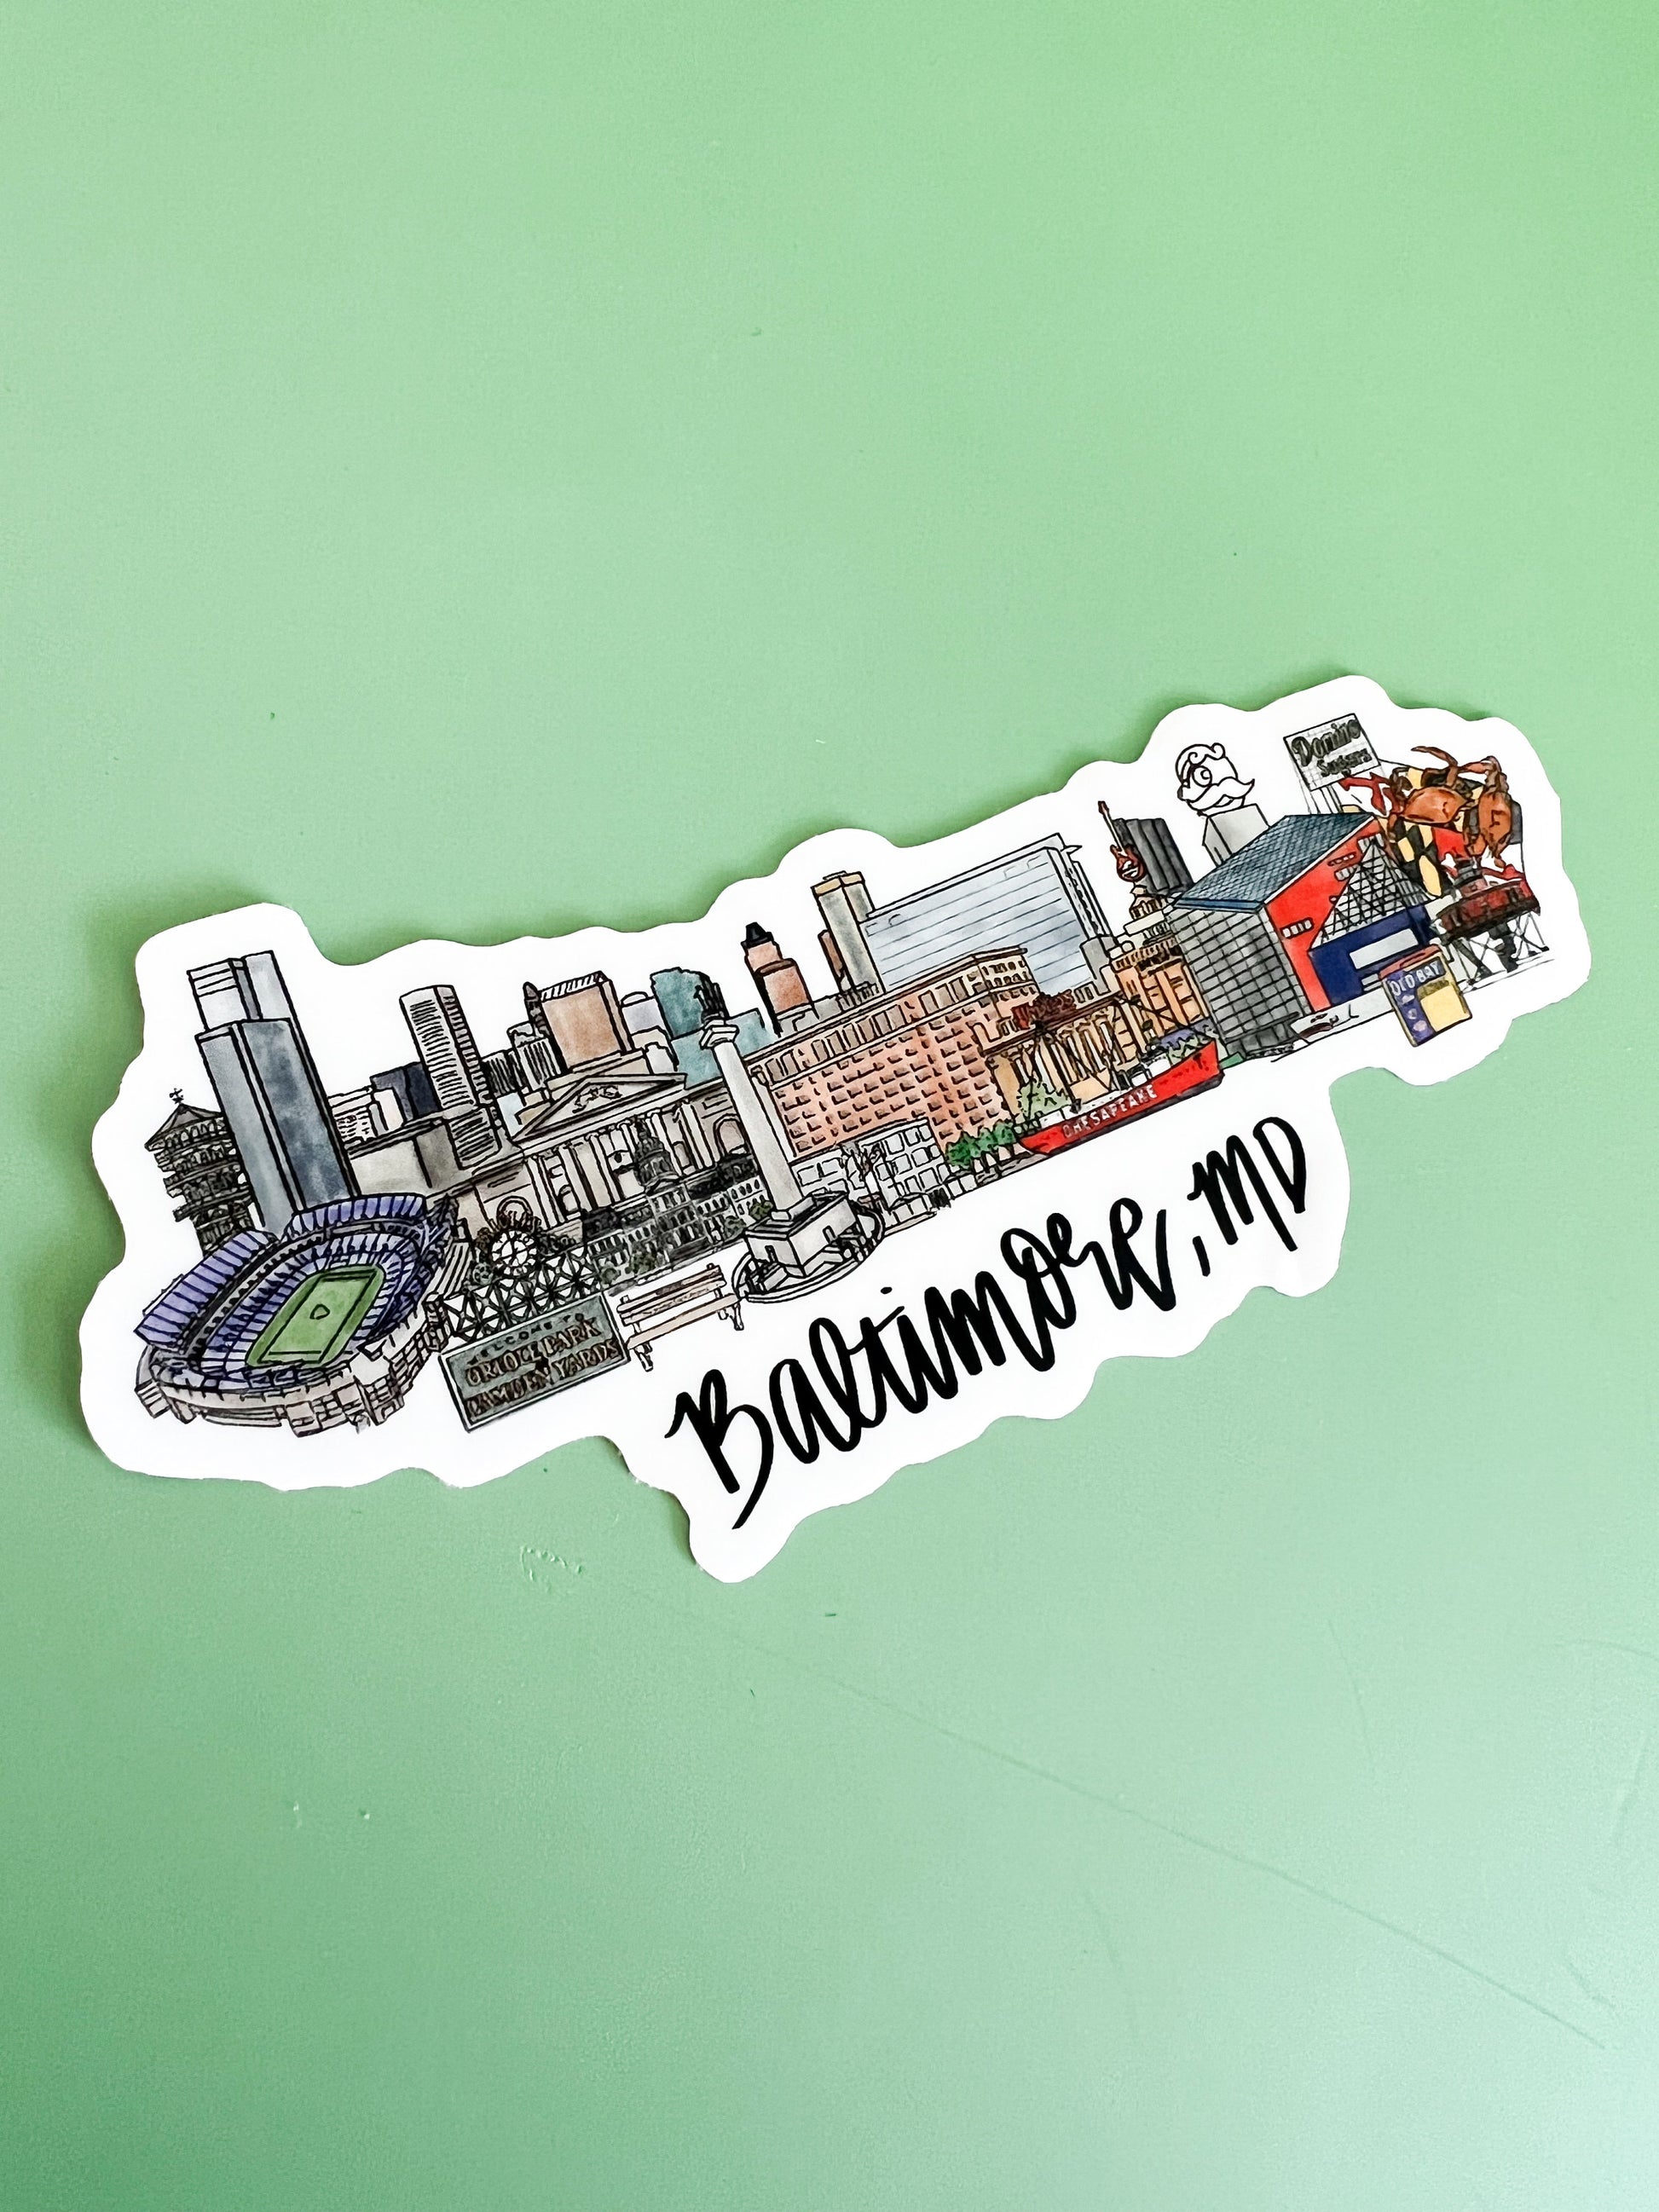 Baltimore Maryland (MD) Sticker, Skyline sticker, Souvenir sticker, Maryland Sticker, Baltimore Harbor, Downtown Baltimore